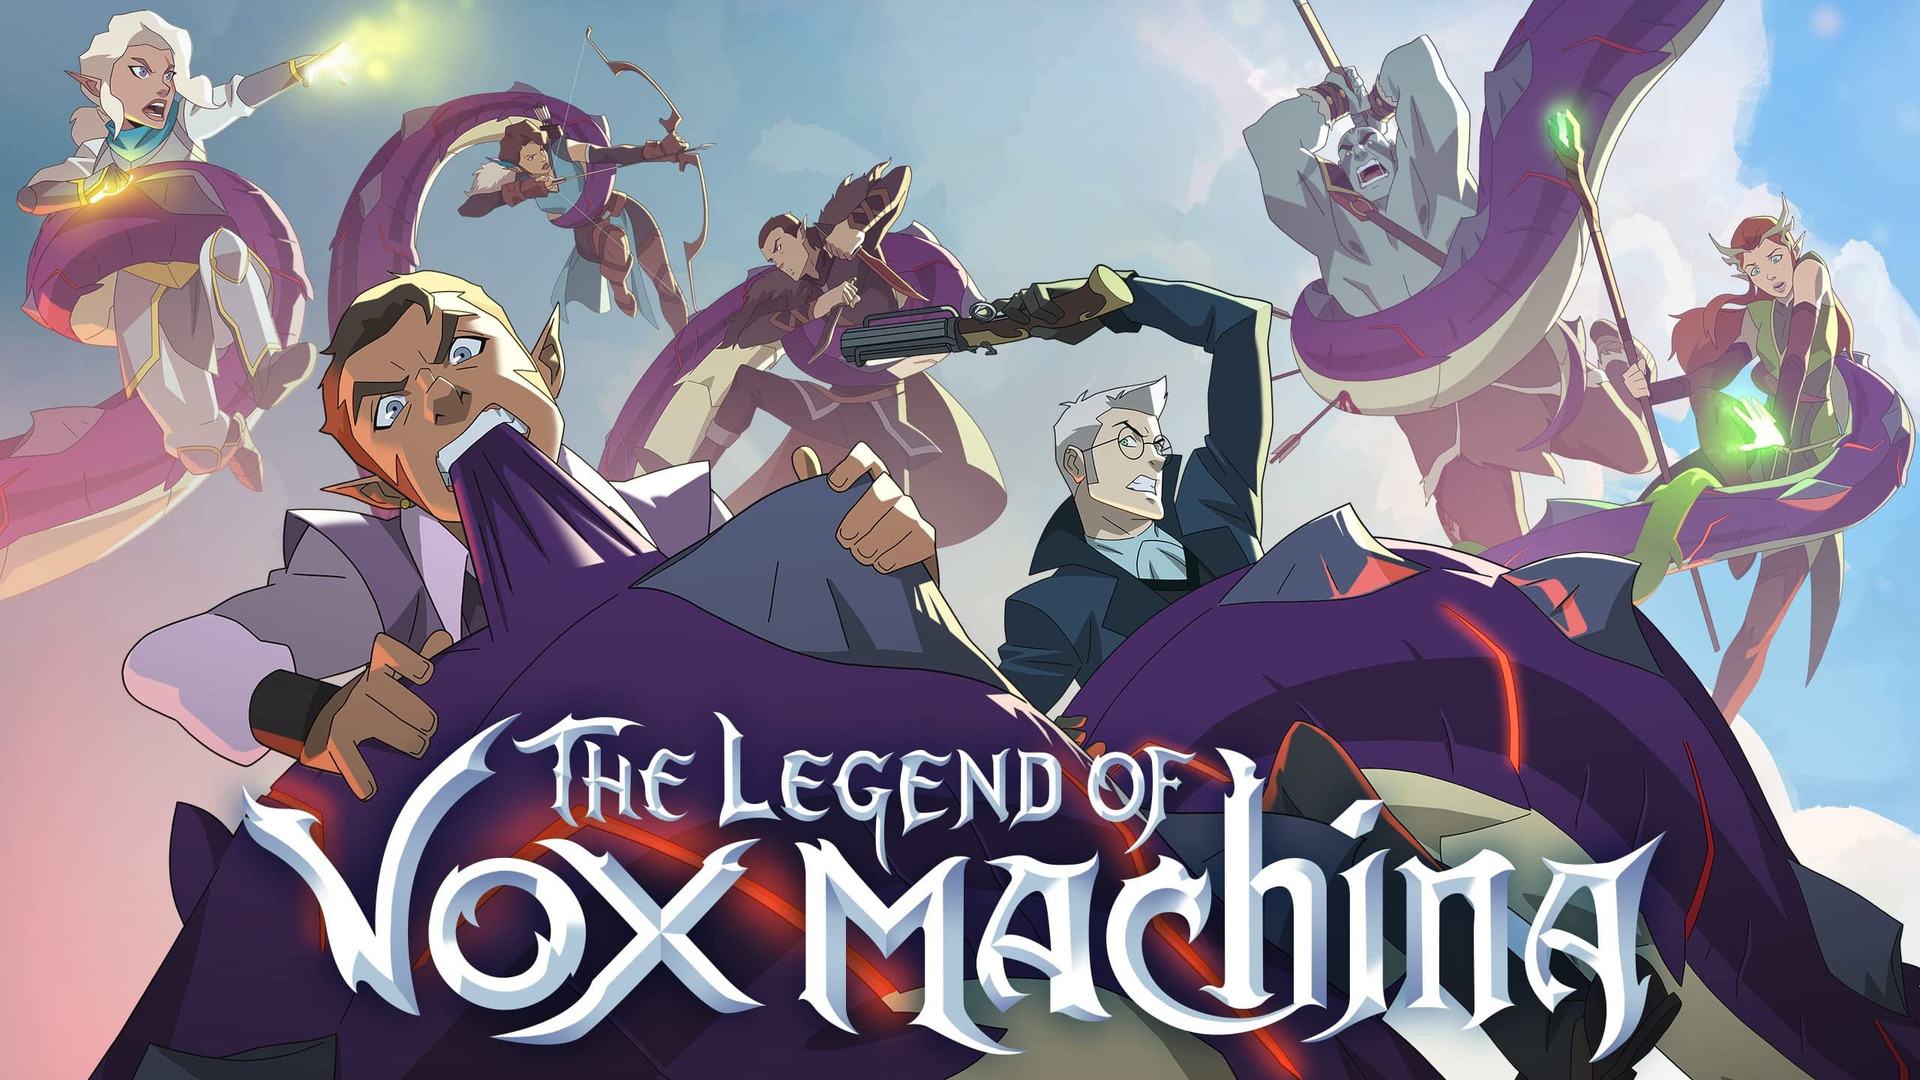 Show The Legend of Vox Machina